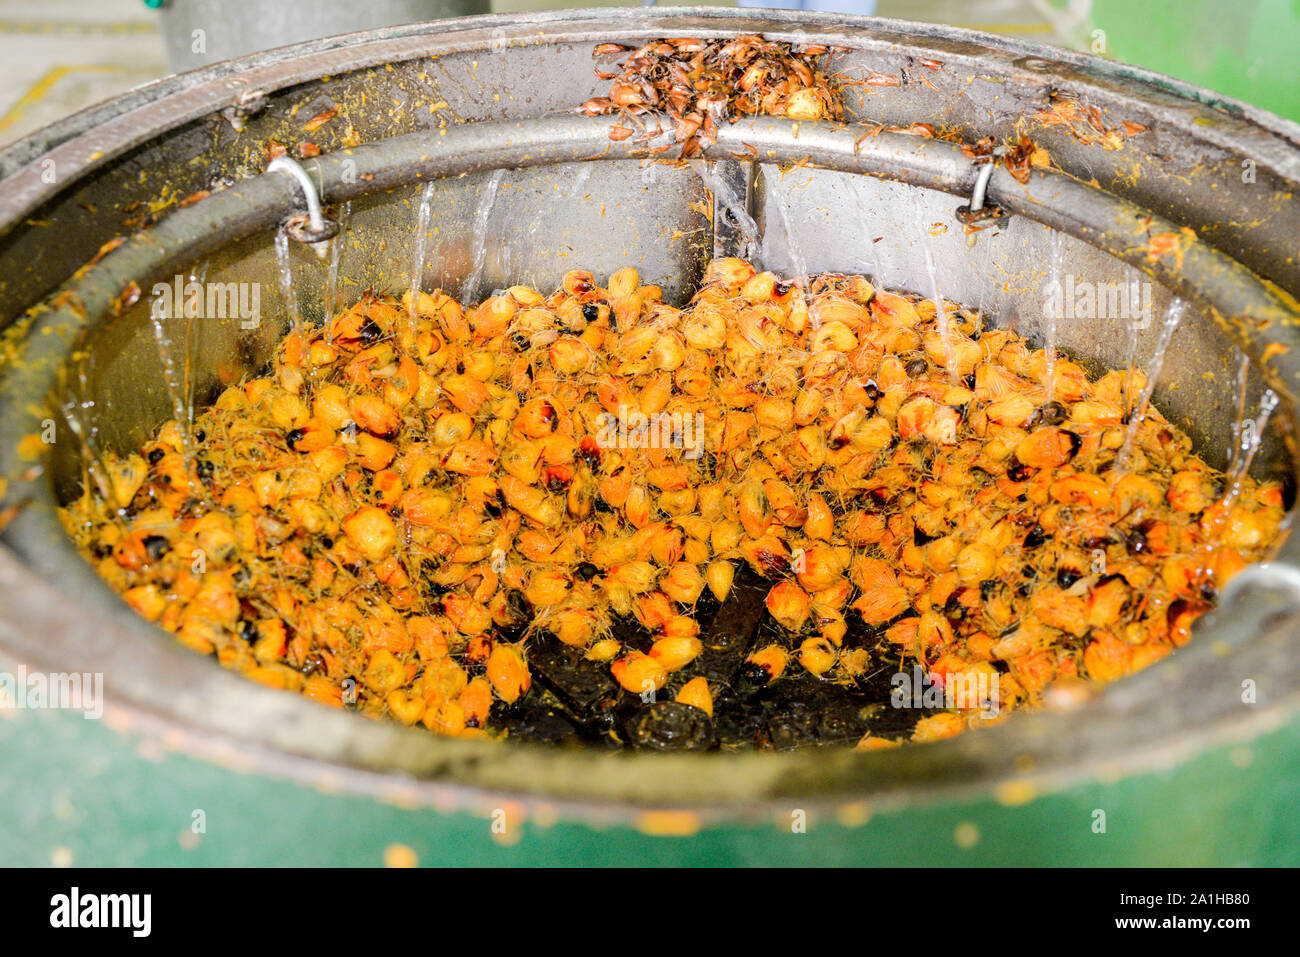 Oil palm fruits in a depulper machine after a few minute before depulper process complete. Stock Photo